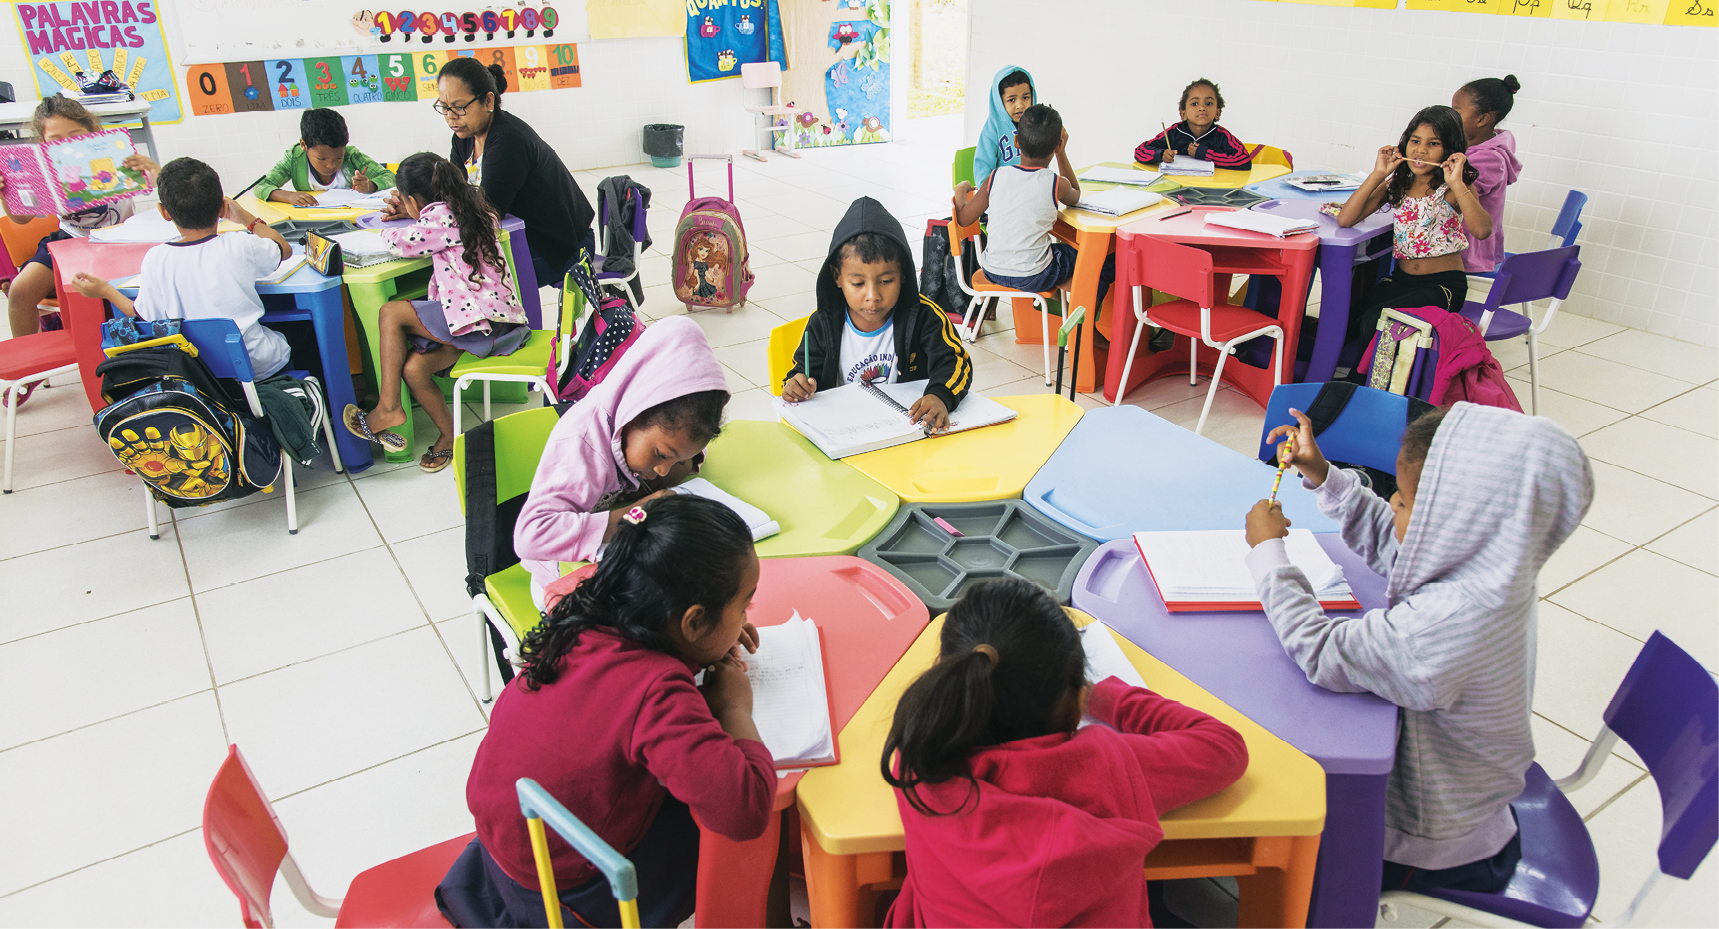 Fotografia. Sala de aula com três mesas coloridas, de forma hexagonal, e crianças sentadas em volta delas. As crianças escrevem em cadernos e, próximo a uma das mesas, à esquerda, uma professora sentada ajuda um grupo de alunos.